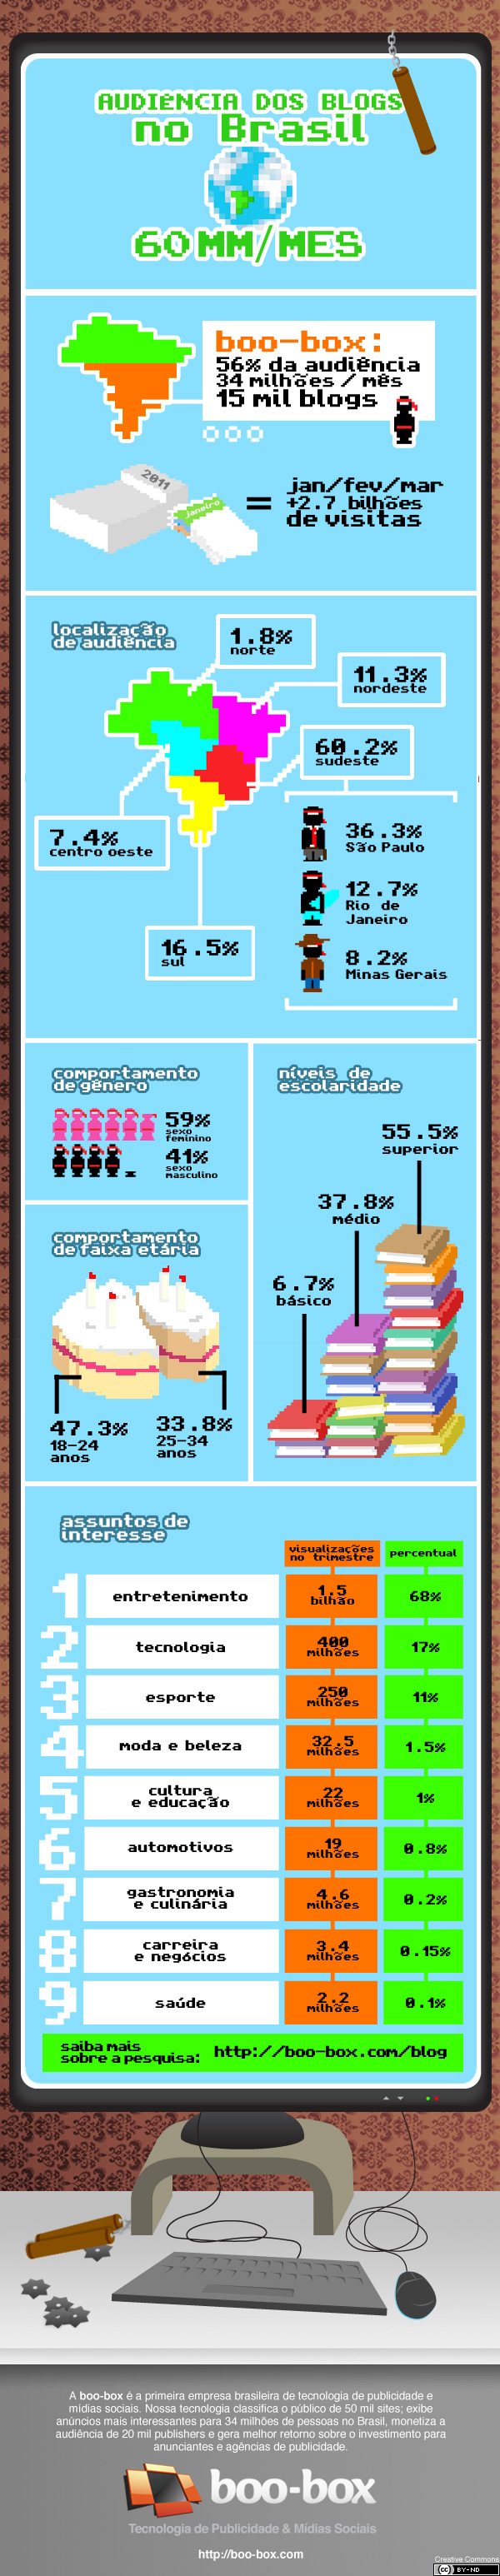 Perfil de la audiencia que tienen los blogs en Brasil. [Infografía] 1